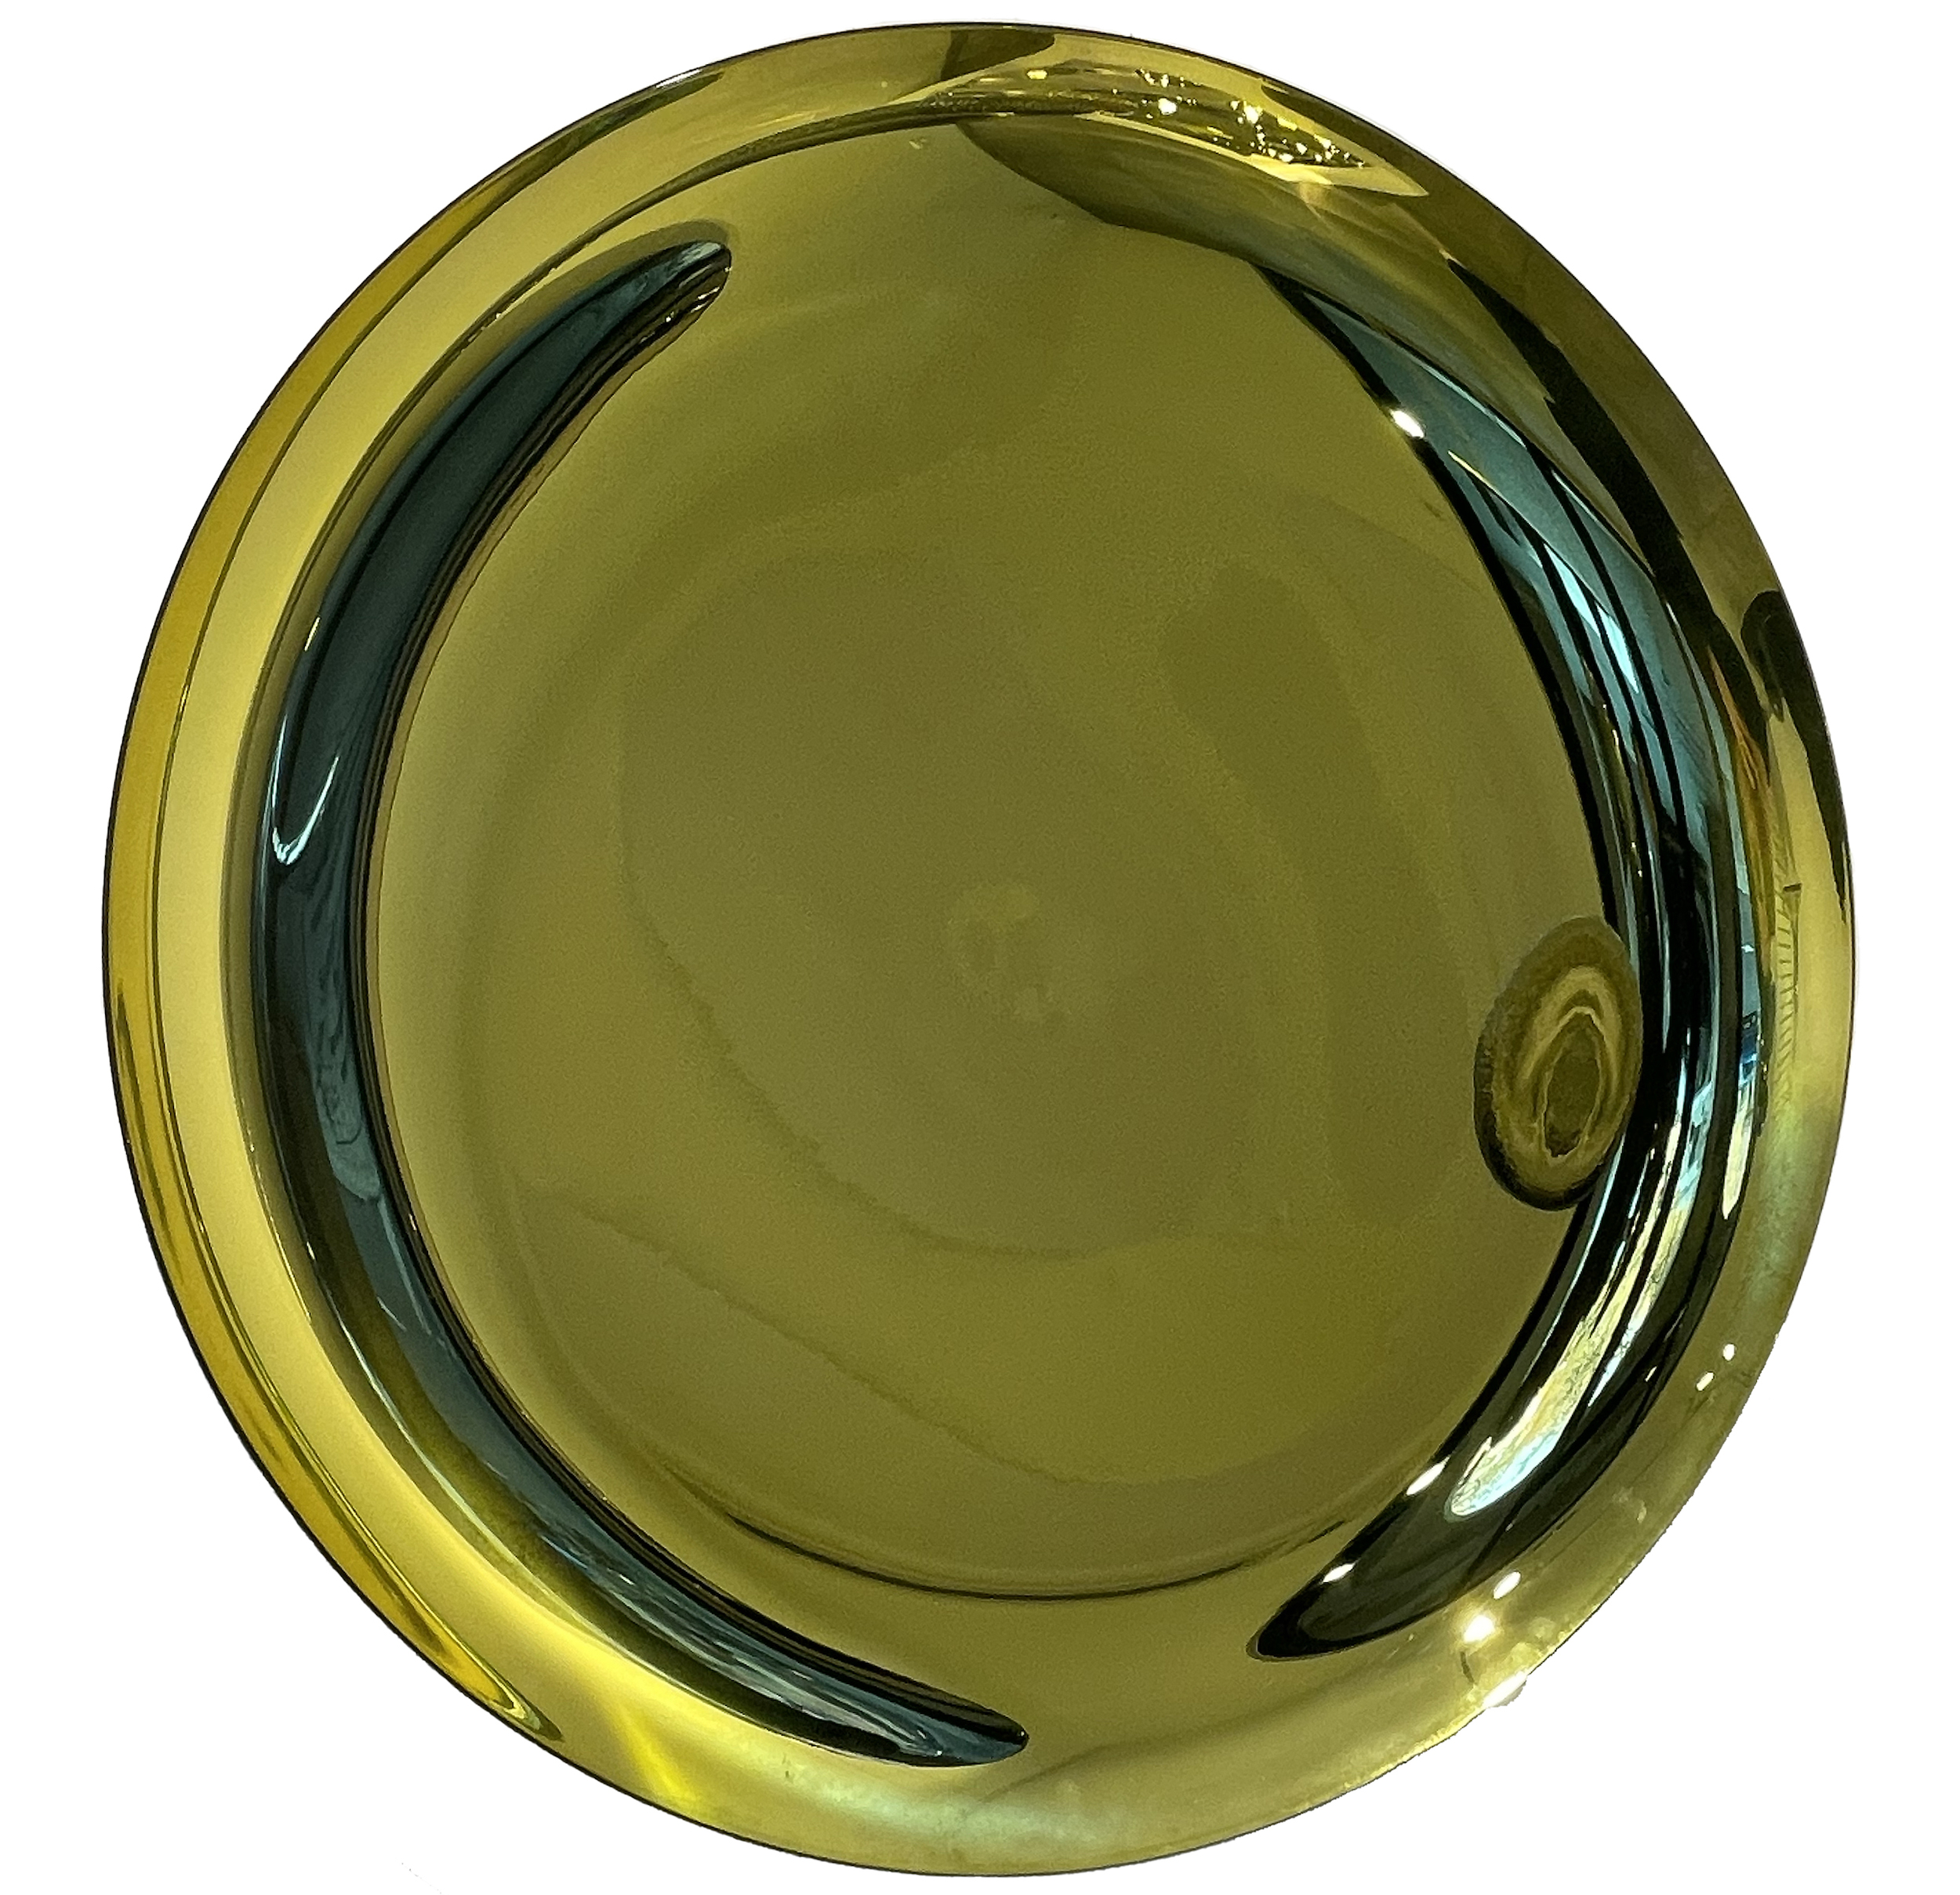 Jeremy Laval - 2022, Deep Yellow Round , miroir teinté et moulé - diamètre 90 cm/ 35 2/5 in - Unique © Marciano Contemporary